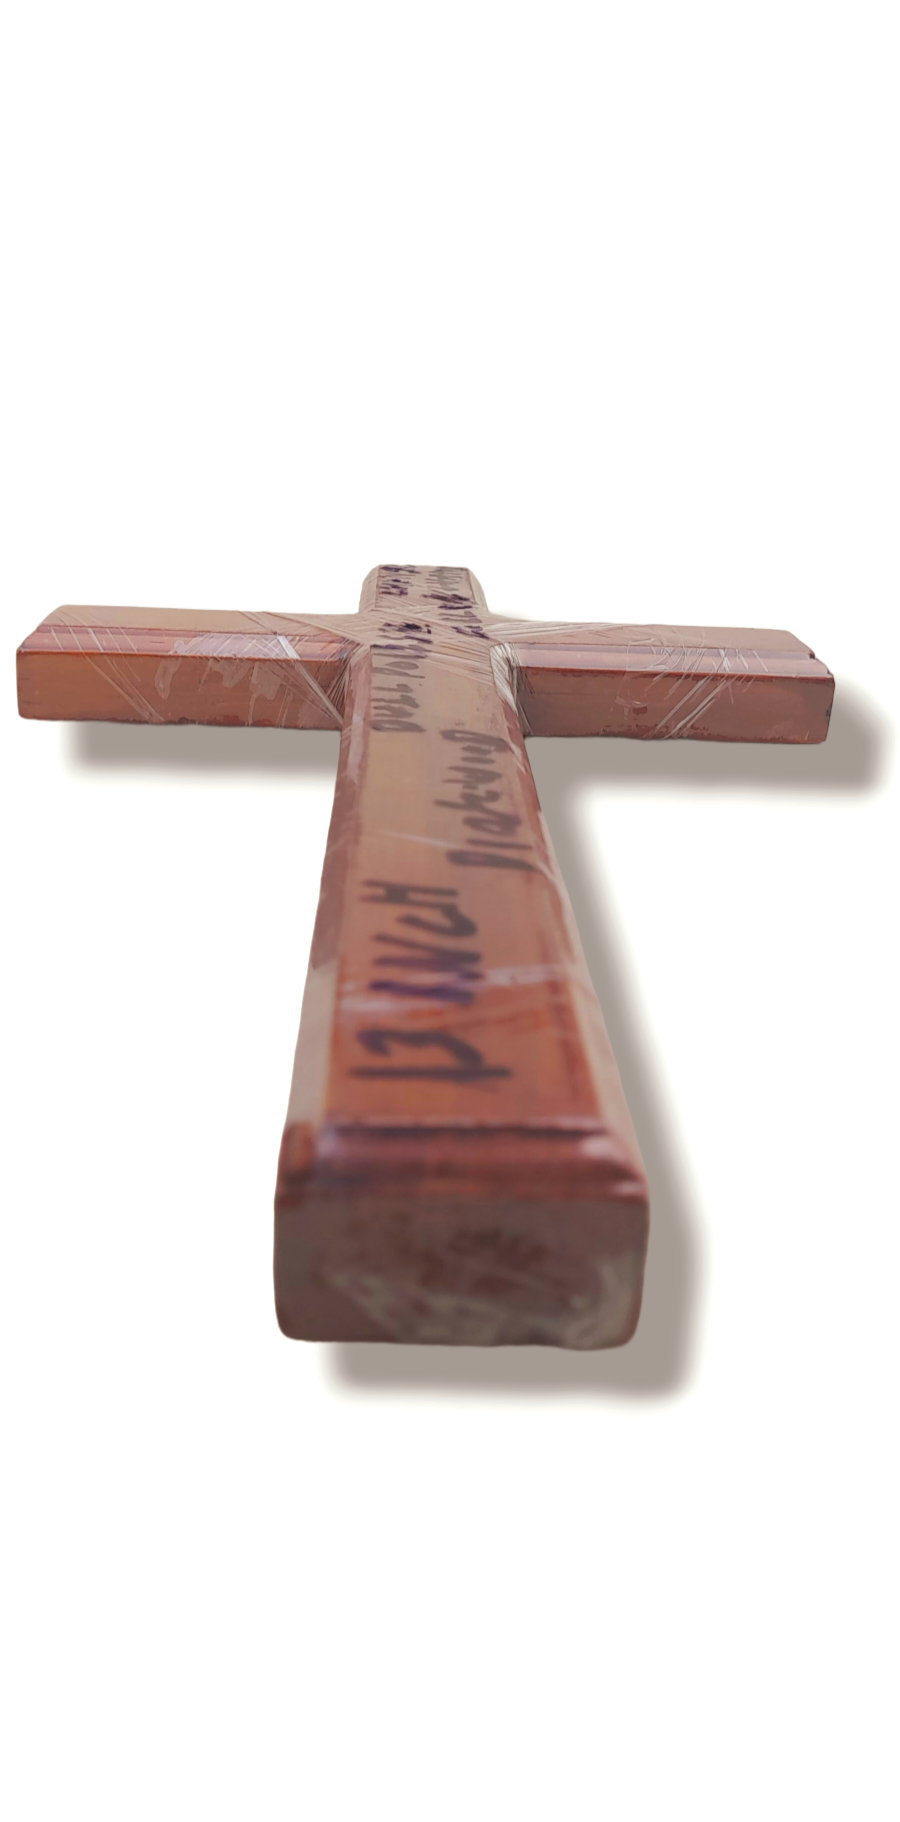 Cross Jesus Wood 13 Inch